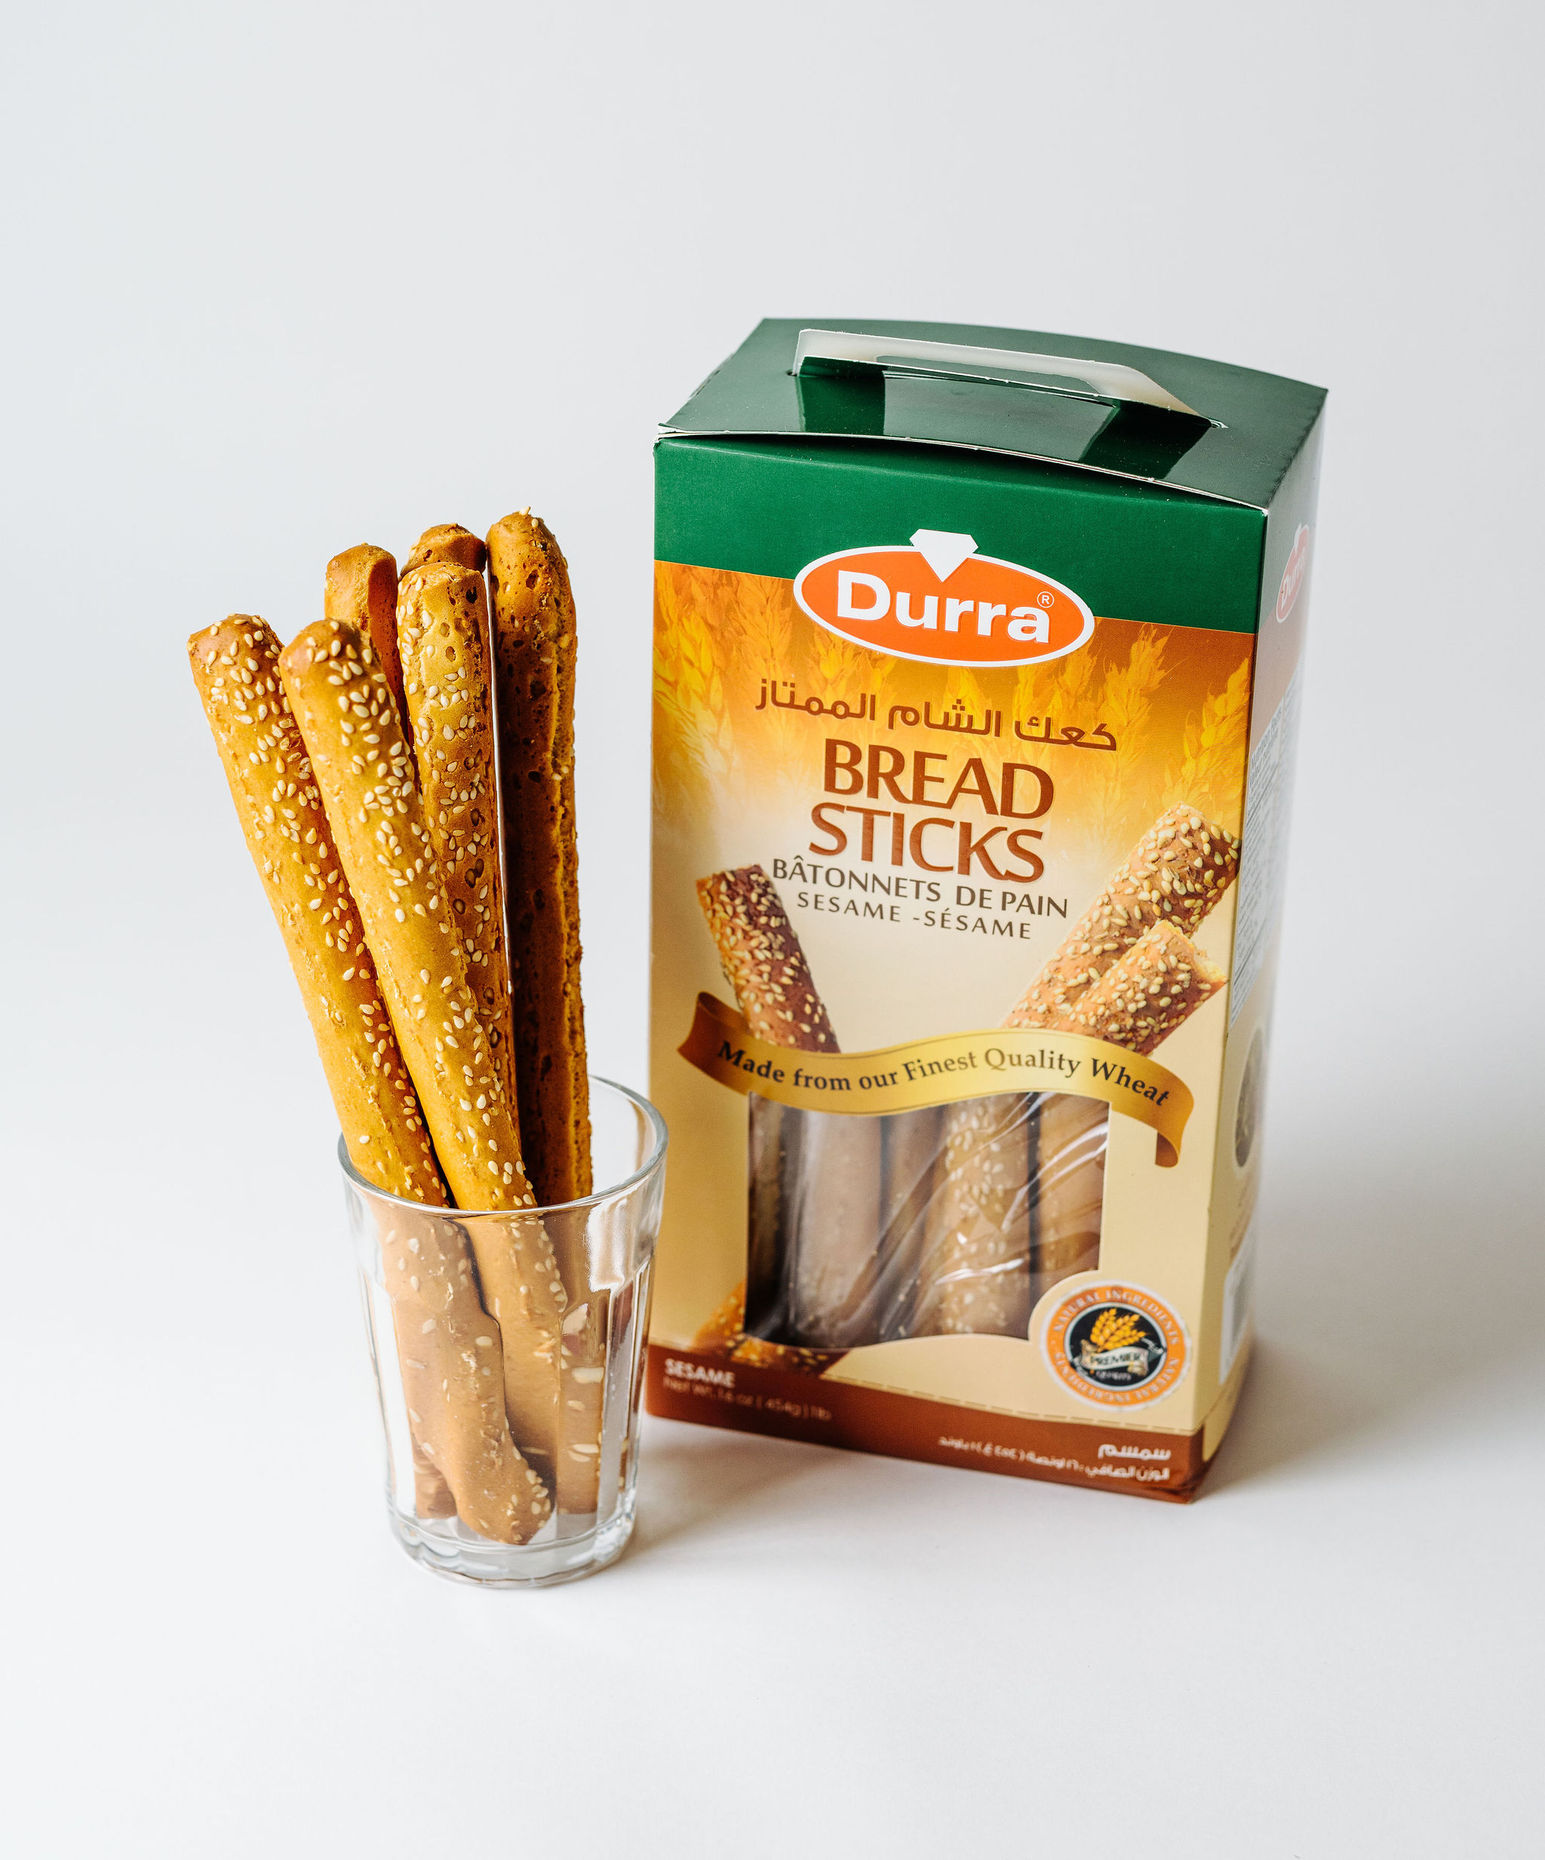 Durra Bread Sticks